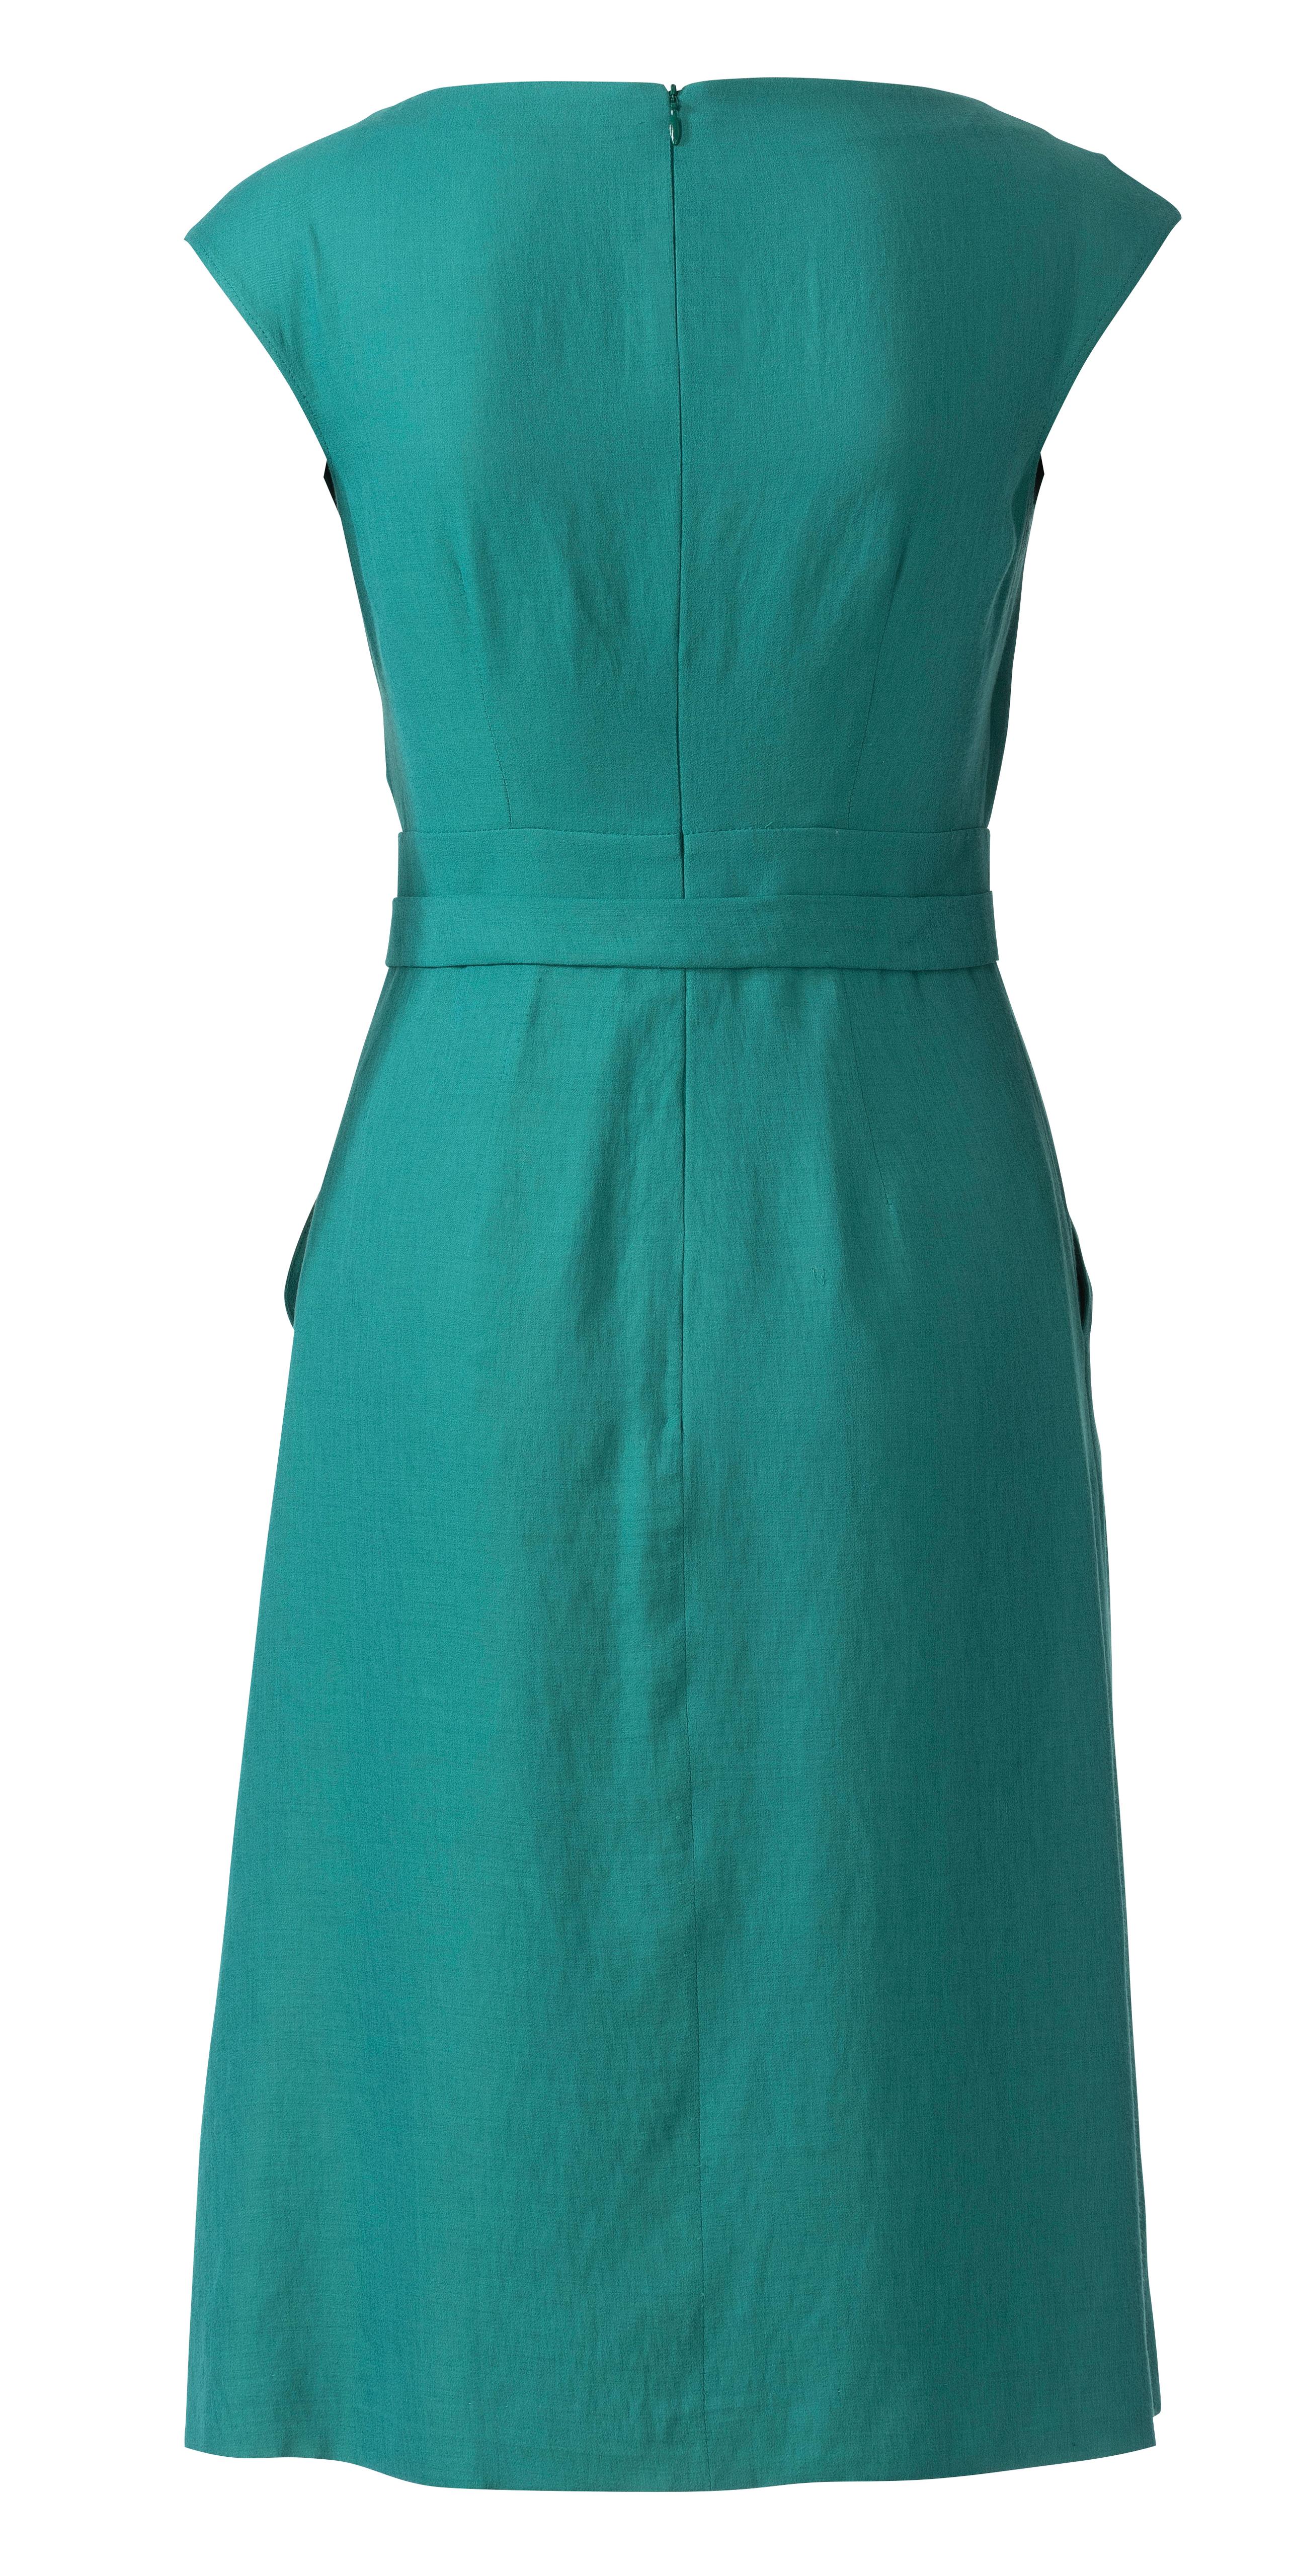 Burda B6239 Dress Sewing Pattern